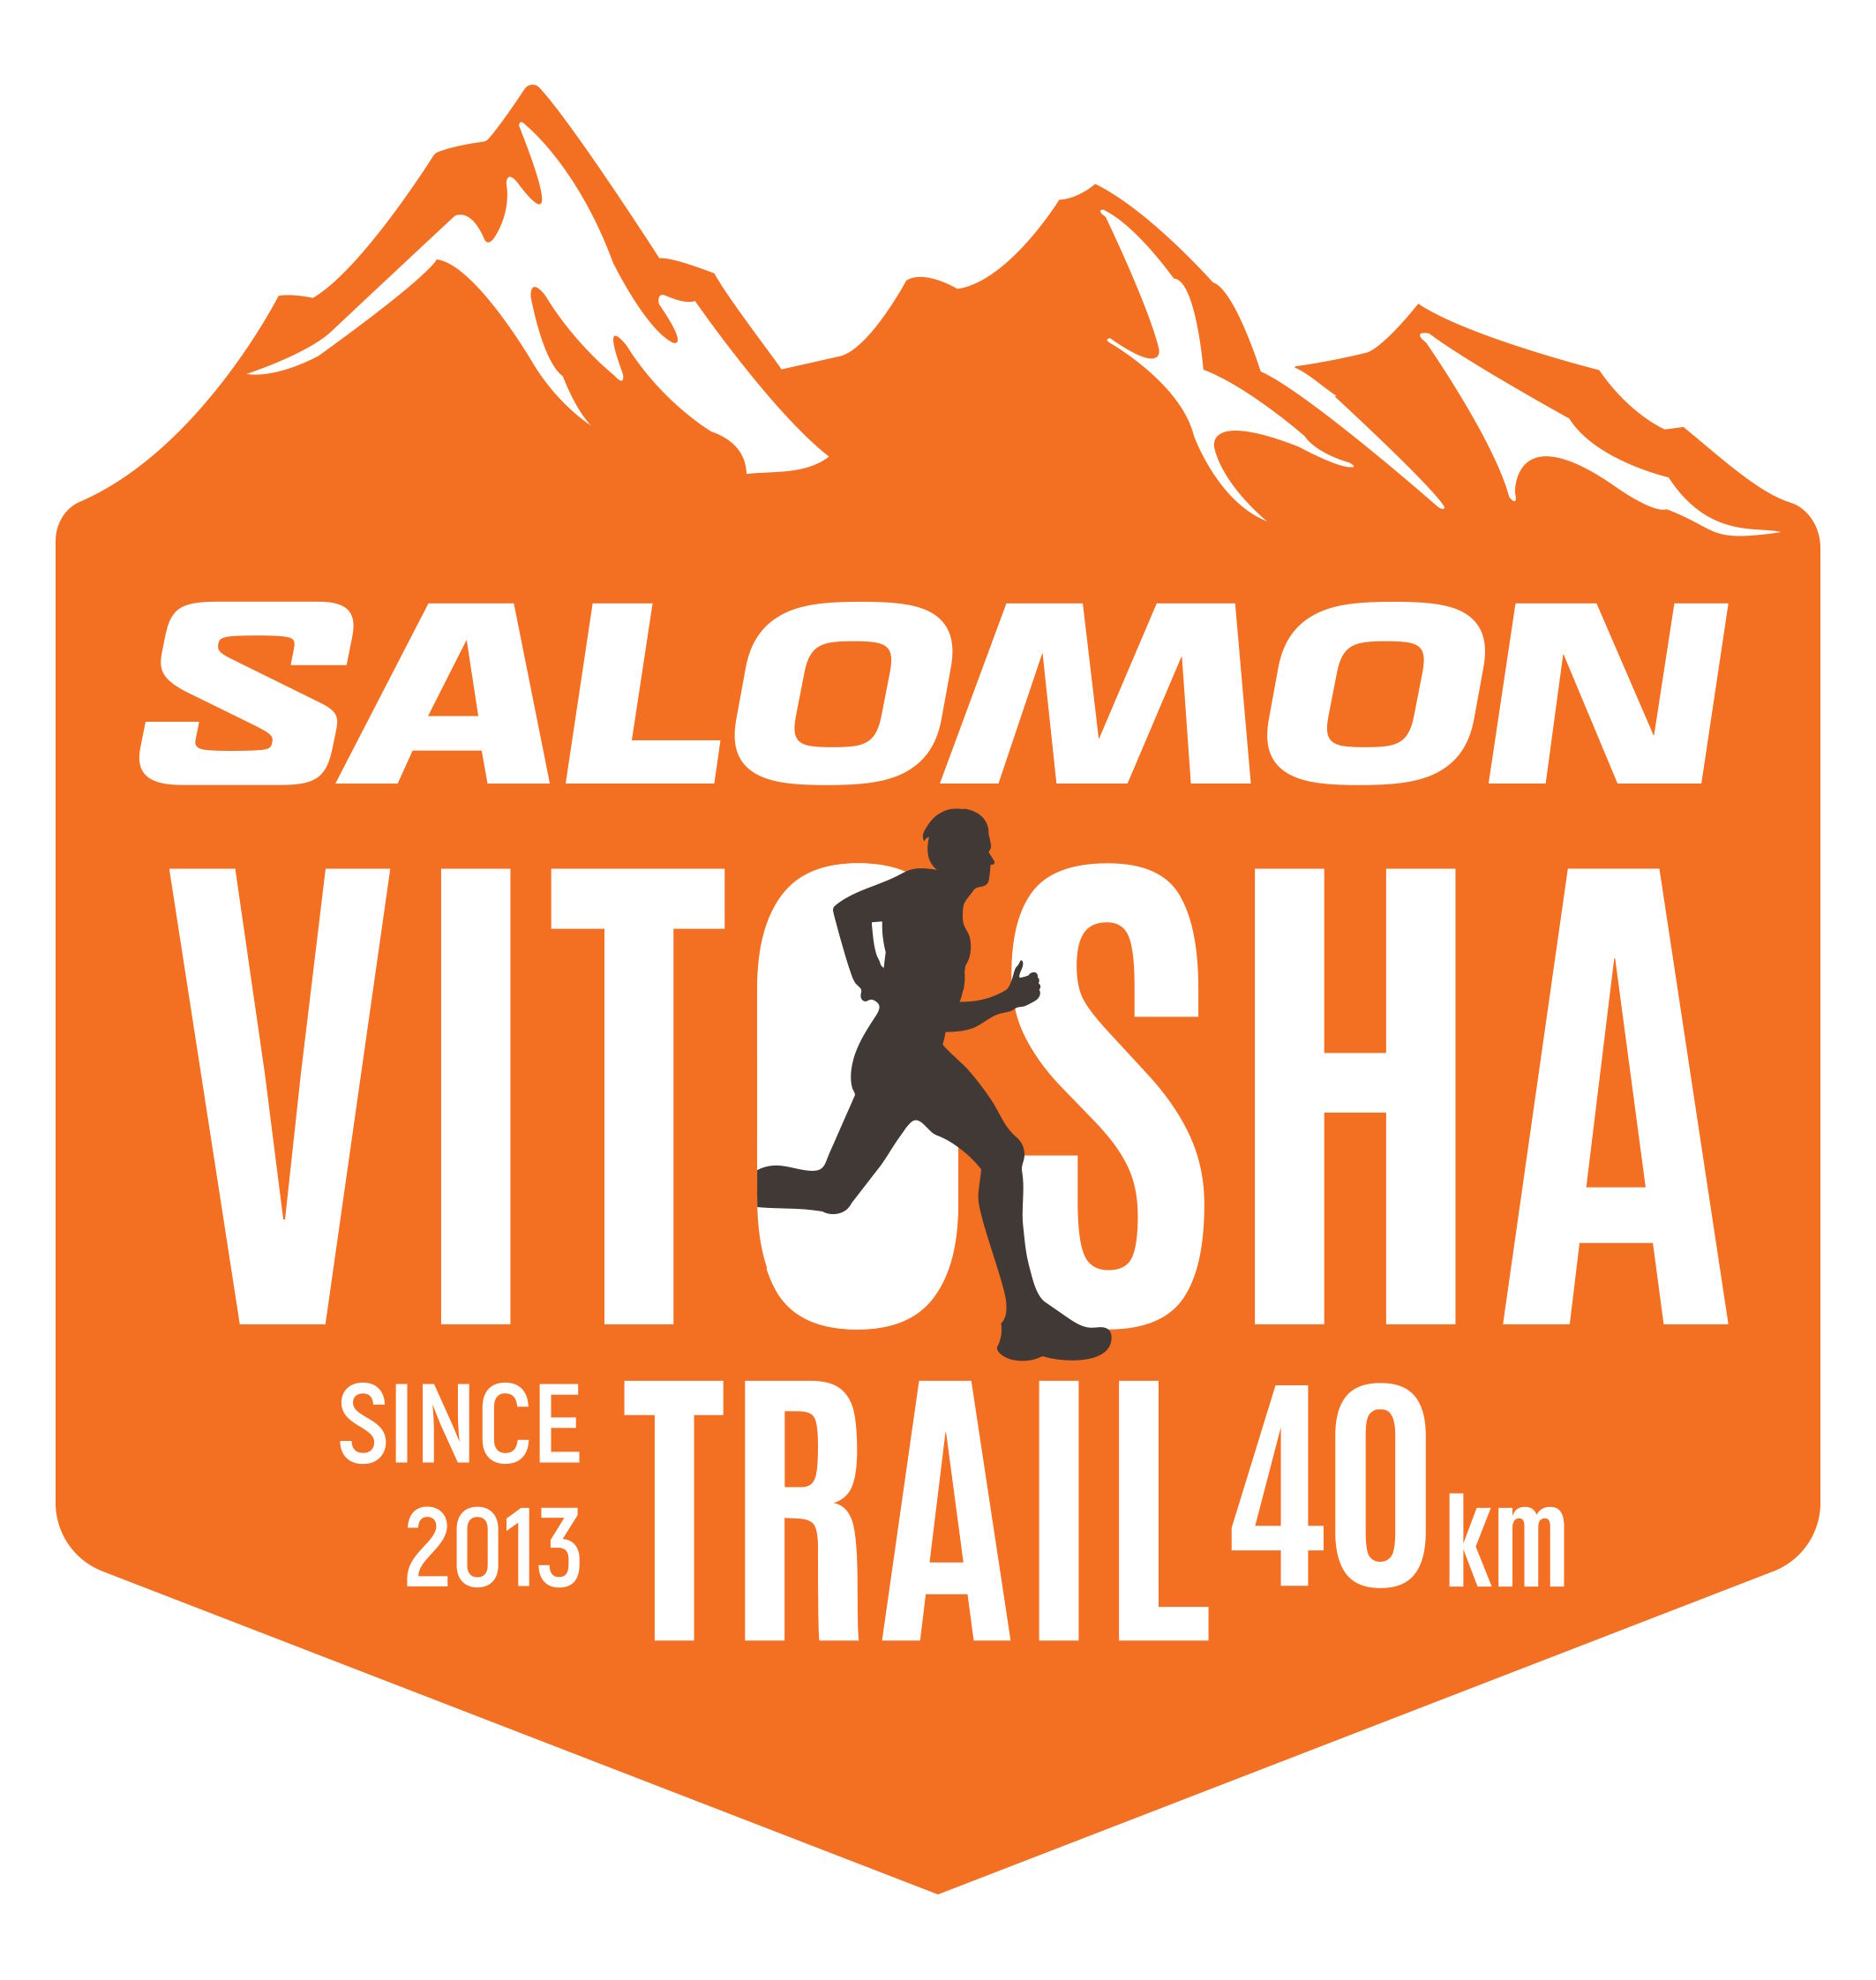 Salomon Vitosha Trail logo 40 km